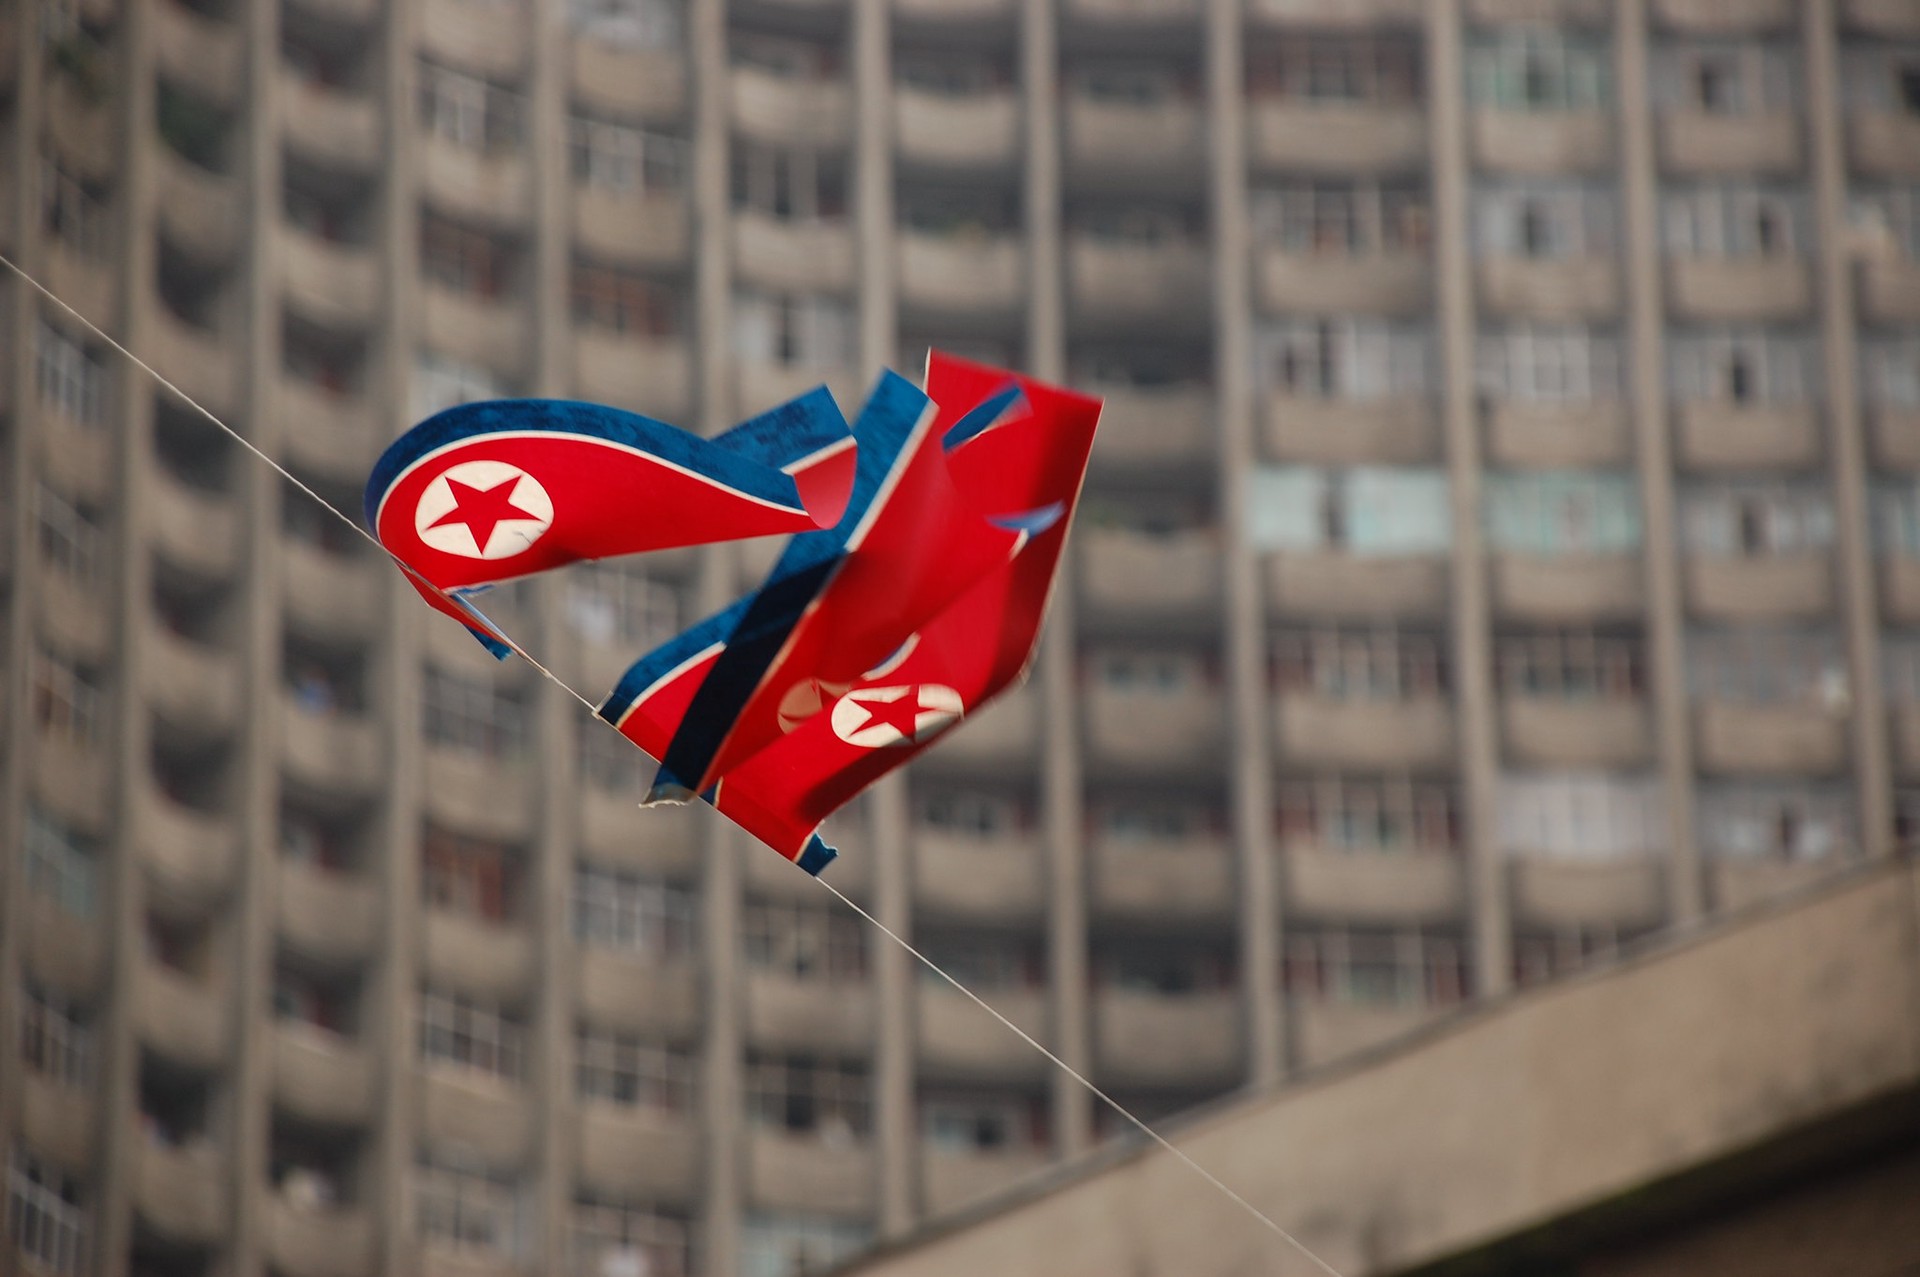 Речи о поставках северокорейских боеприпасов в Россию не идёт, заявил посол